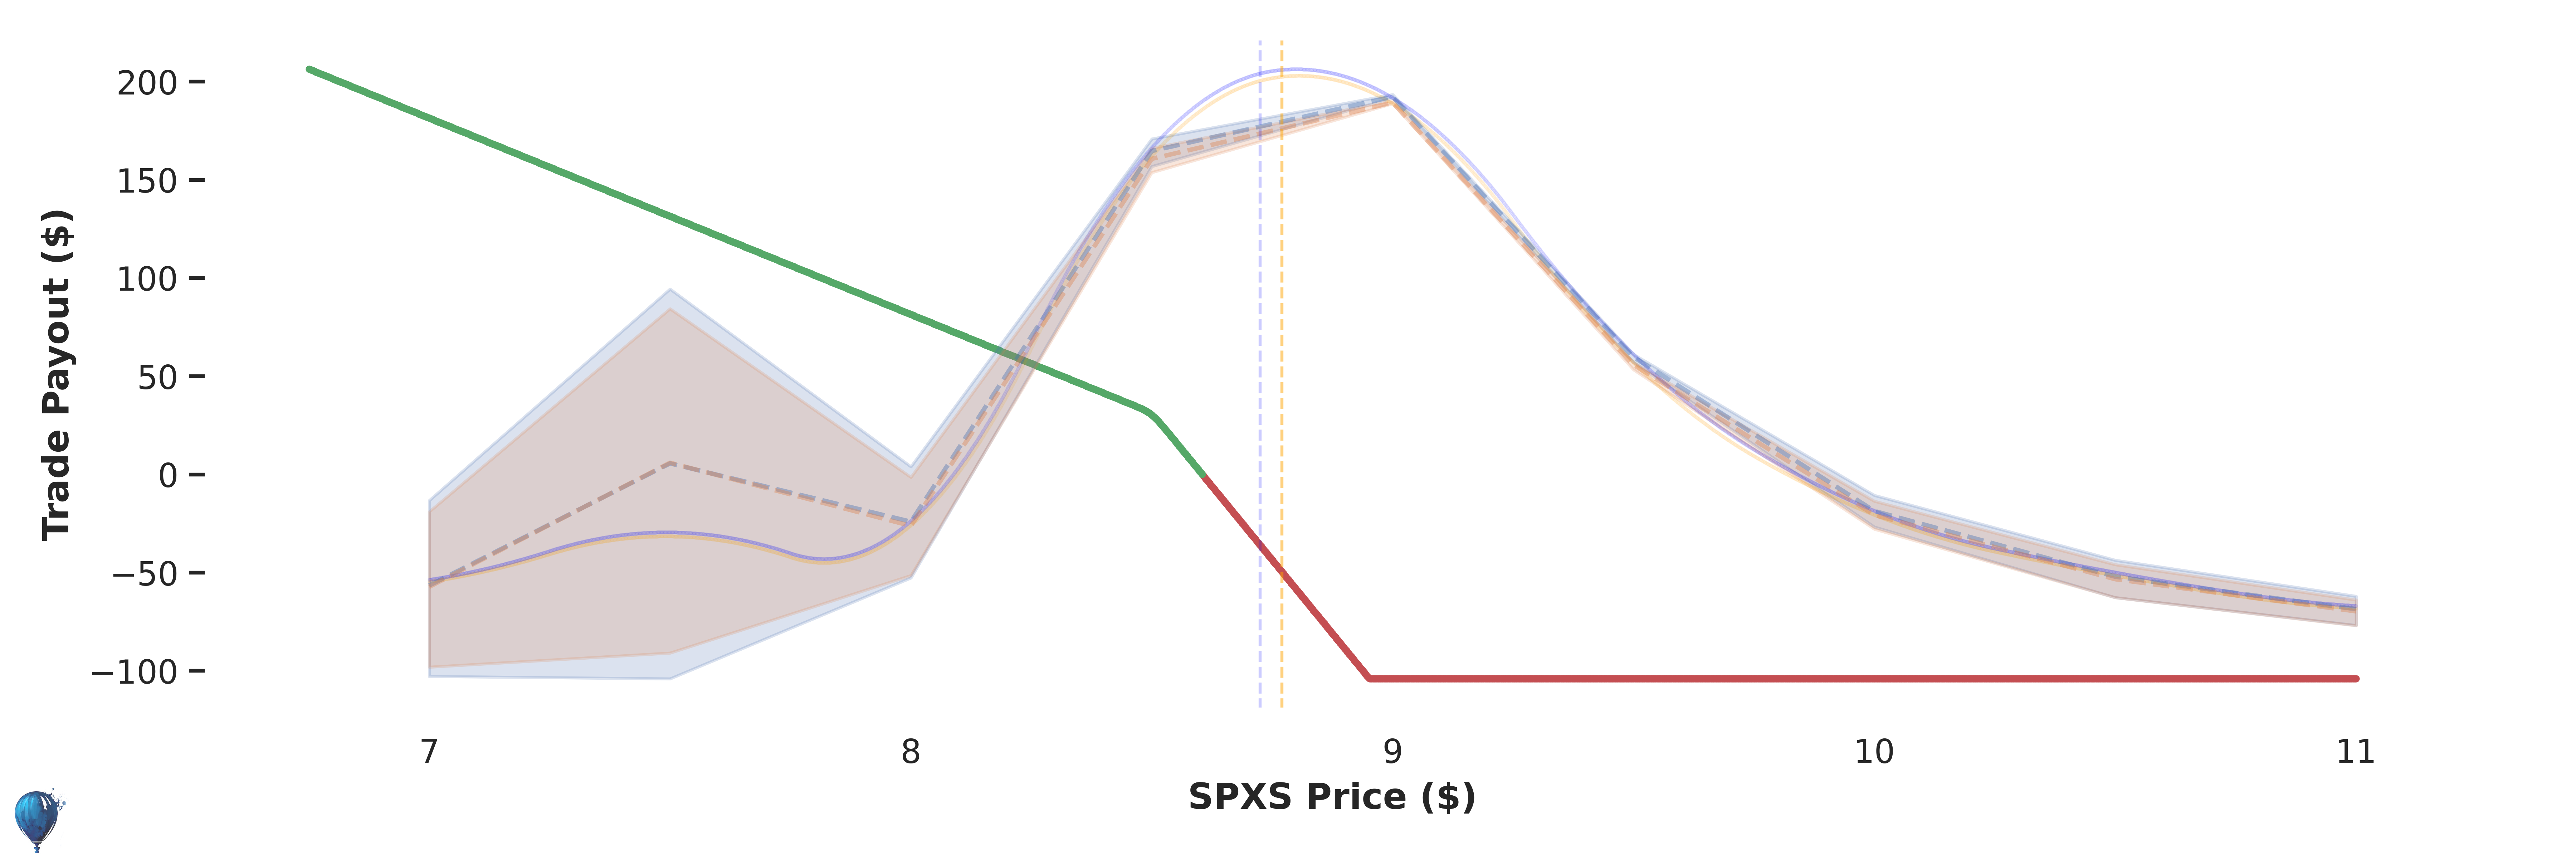 SPXS trade payout at expiration